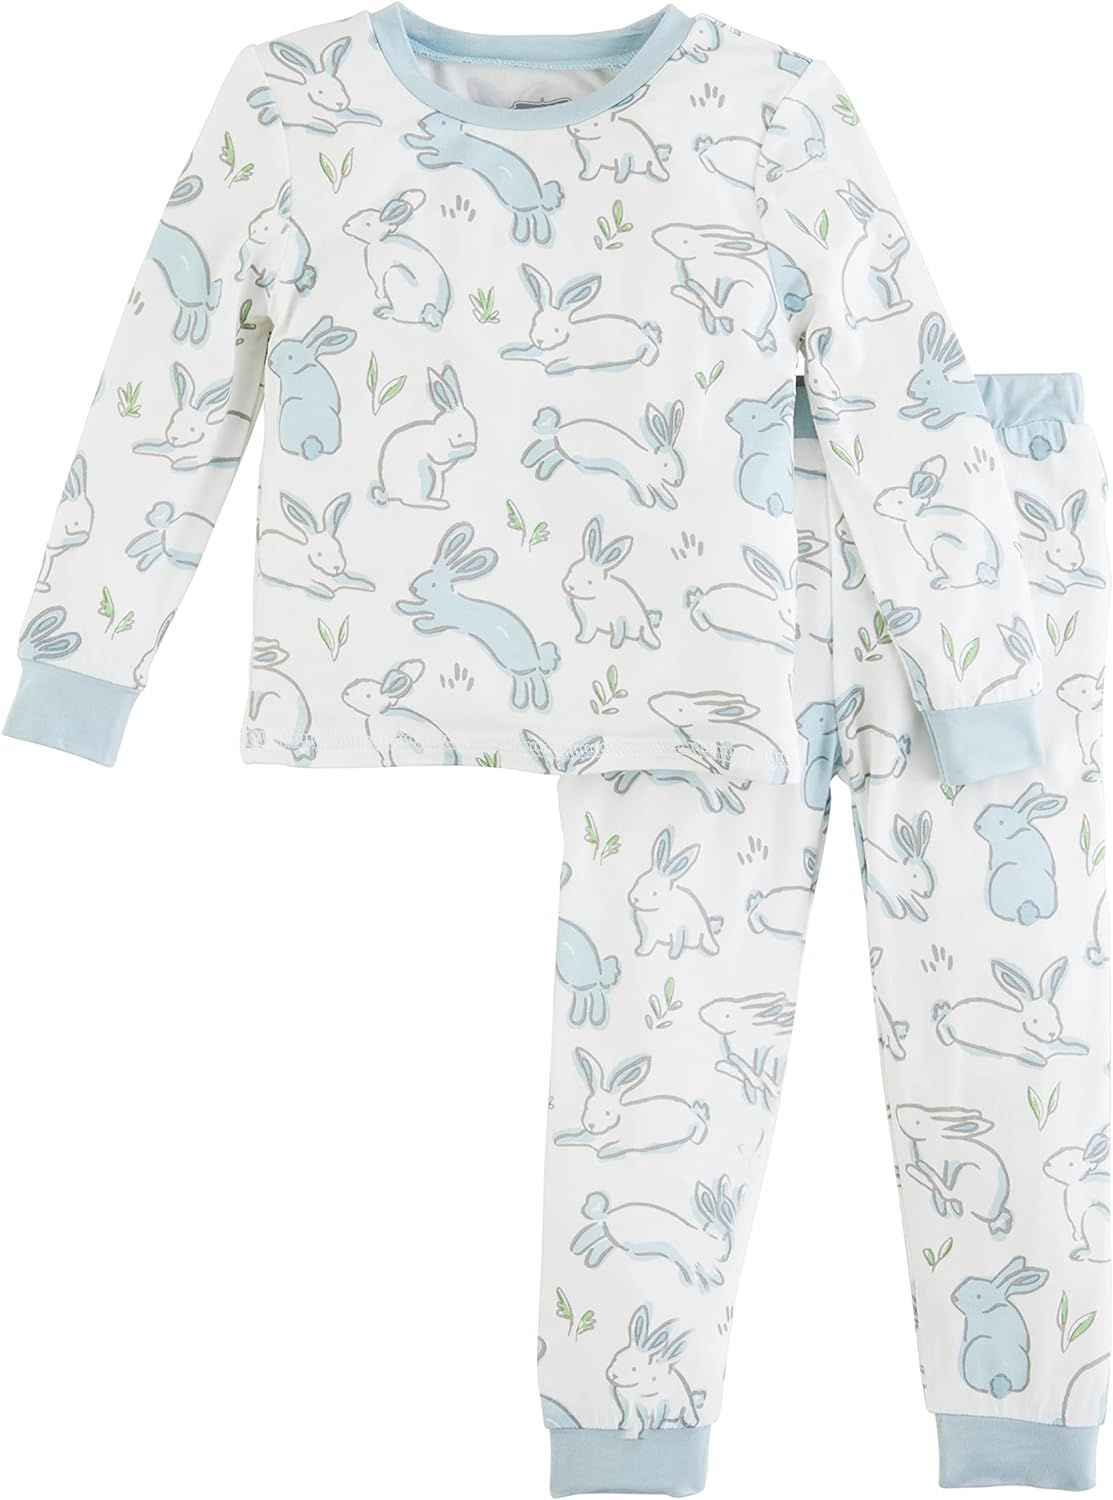 Mud Pie Baby Boy Bunny Pajamas, Blue, 2T | Amazon (US)